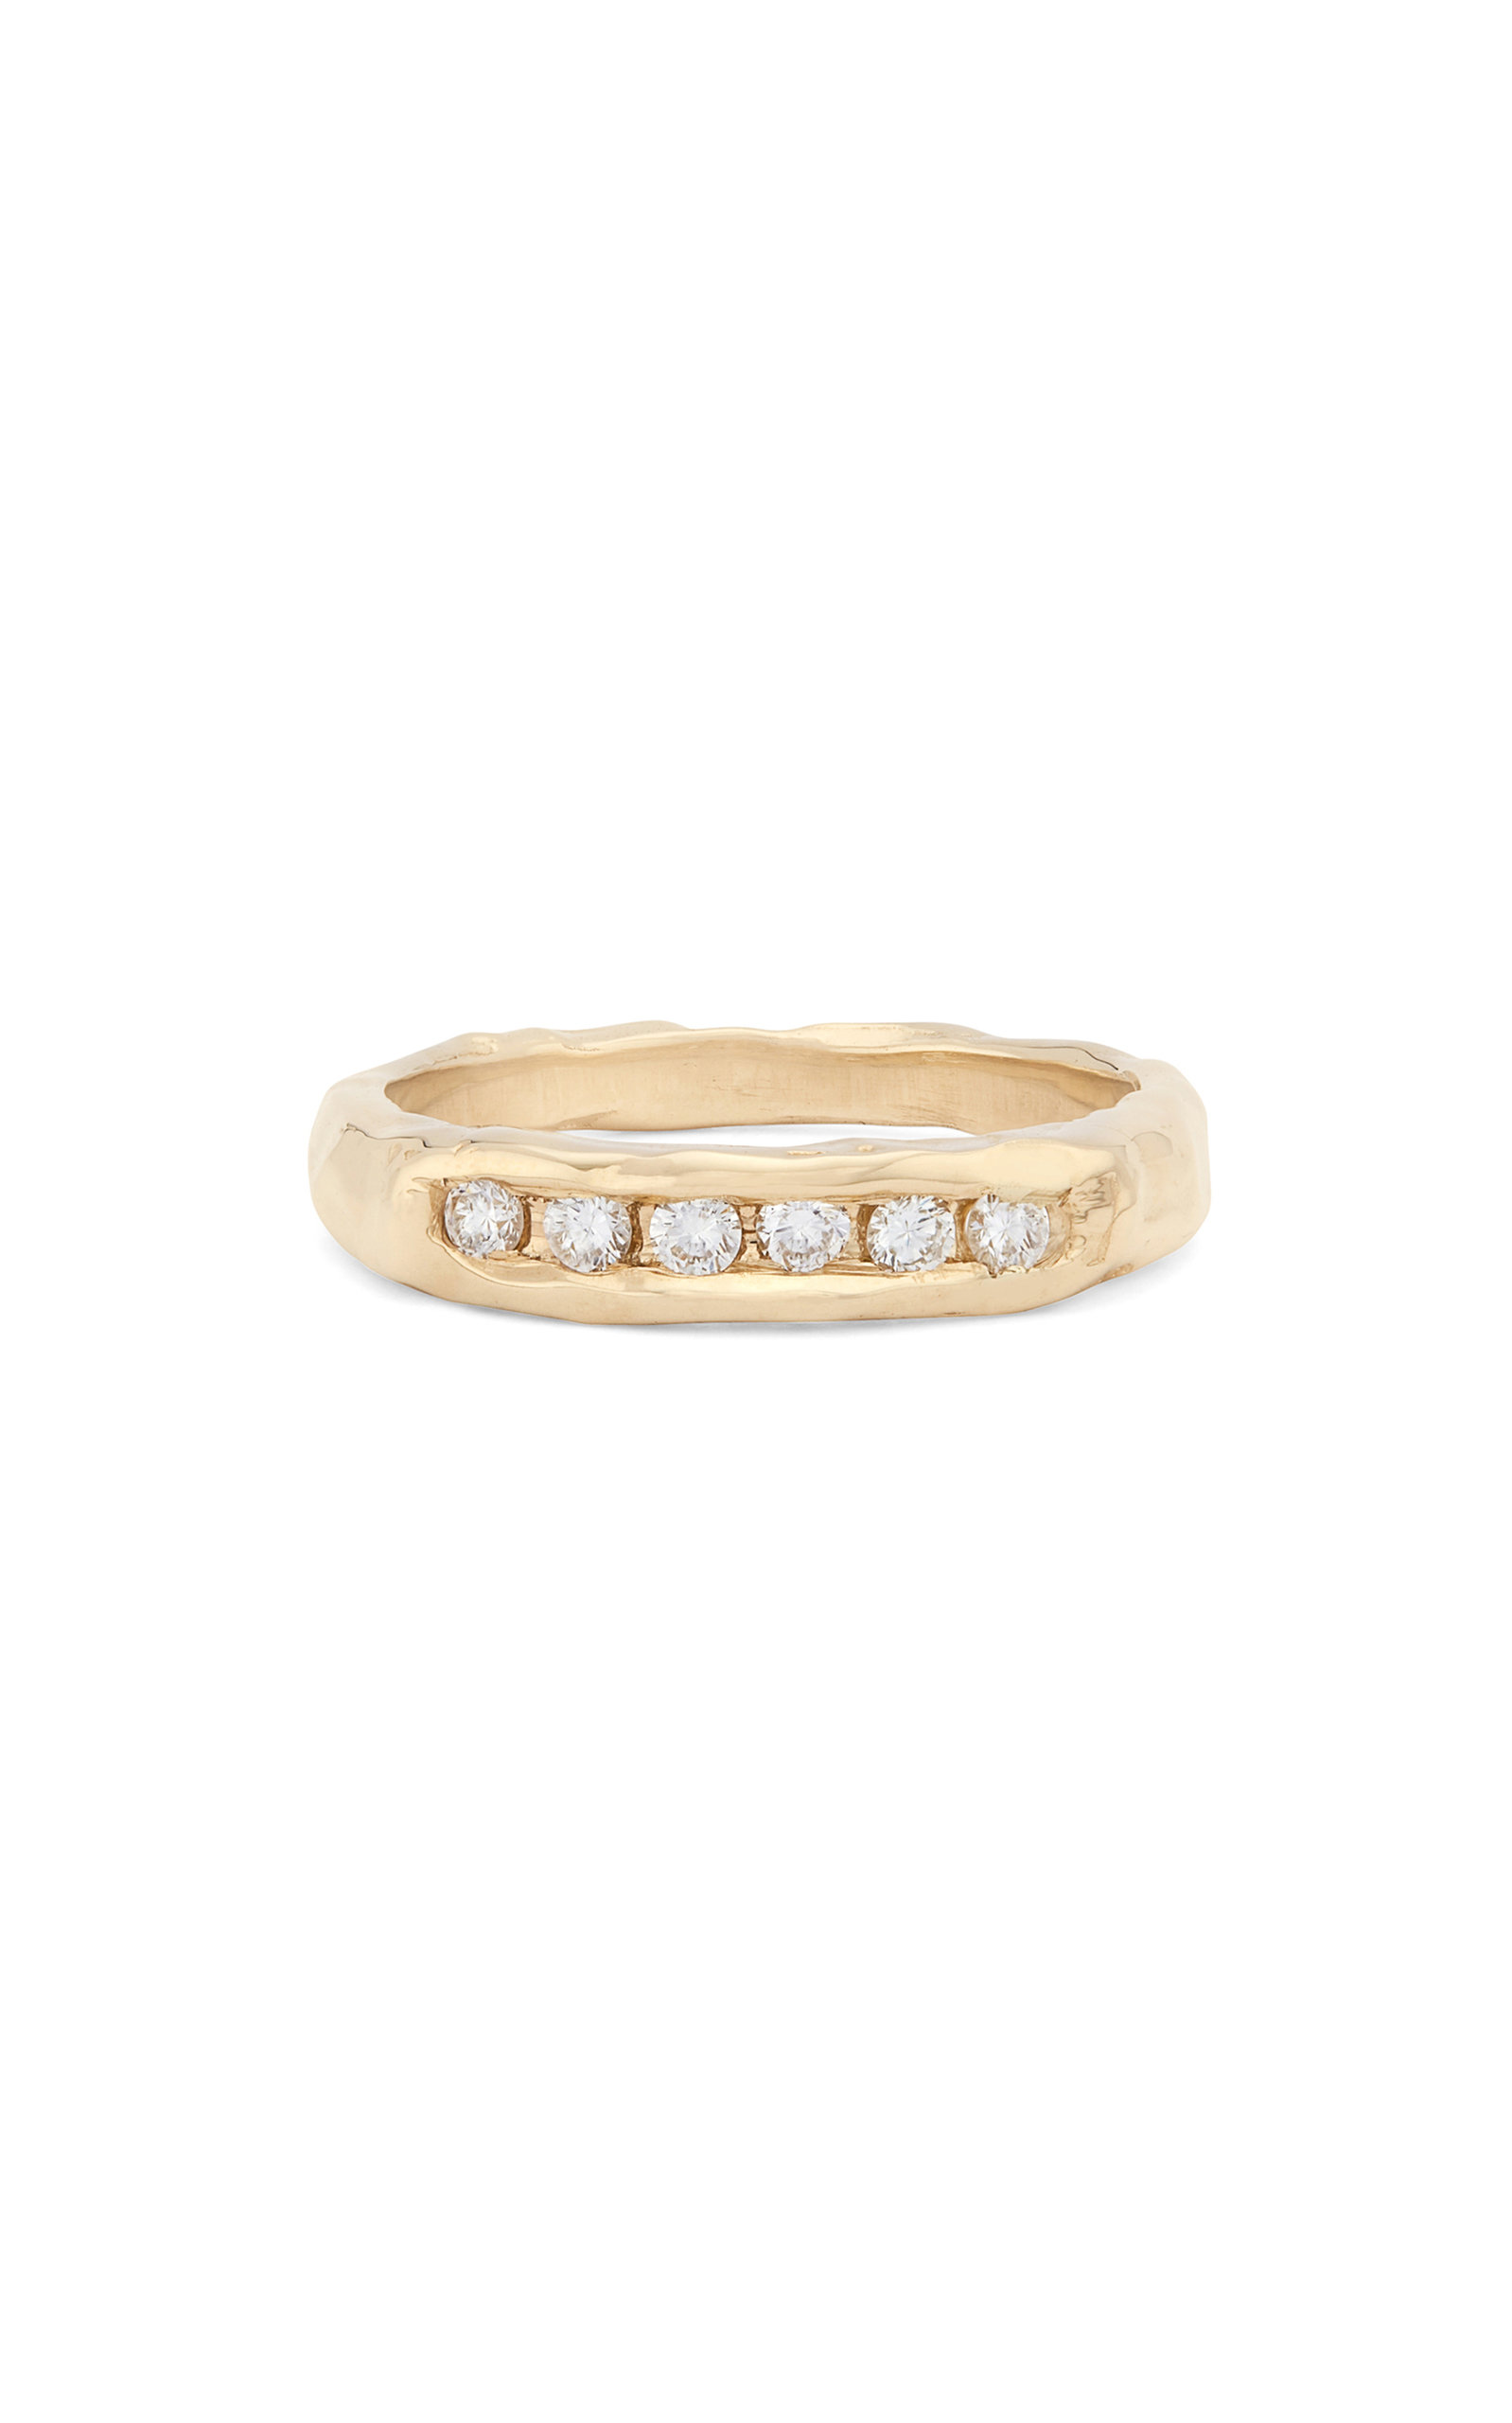 Fie Isolde Women's The Evoke 14K Gold Diamond Ring